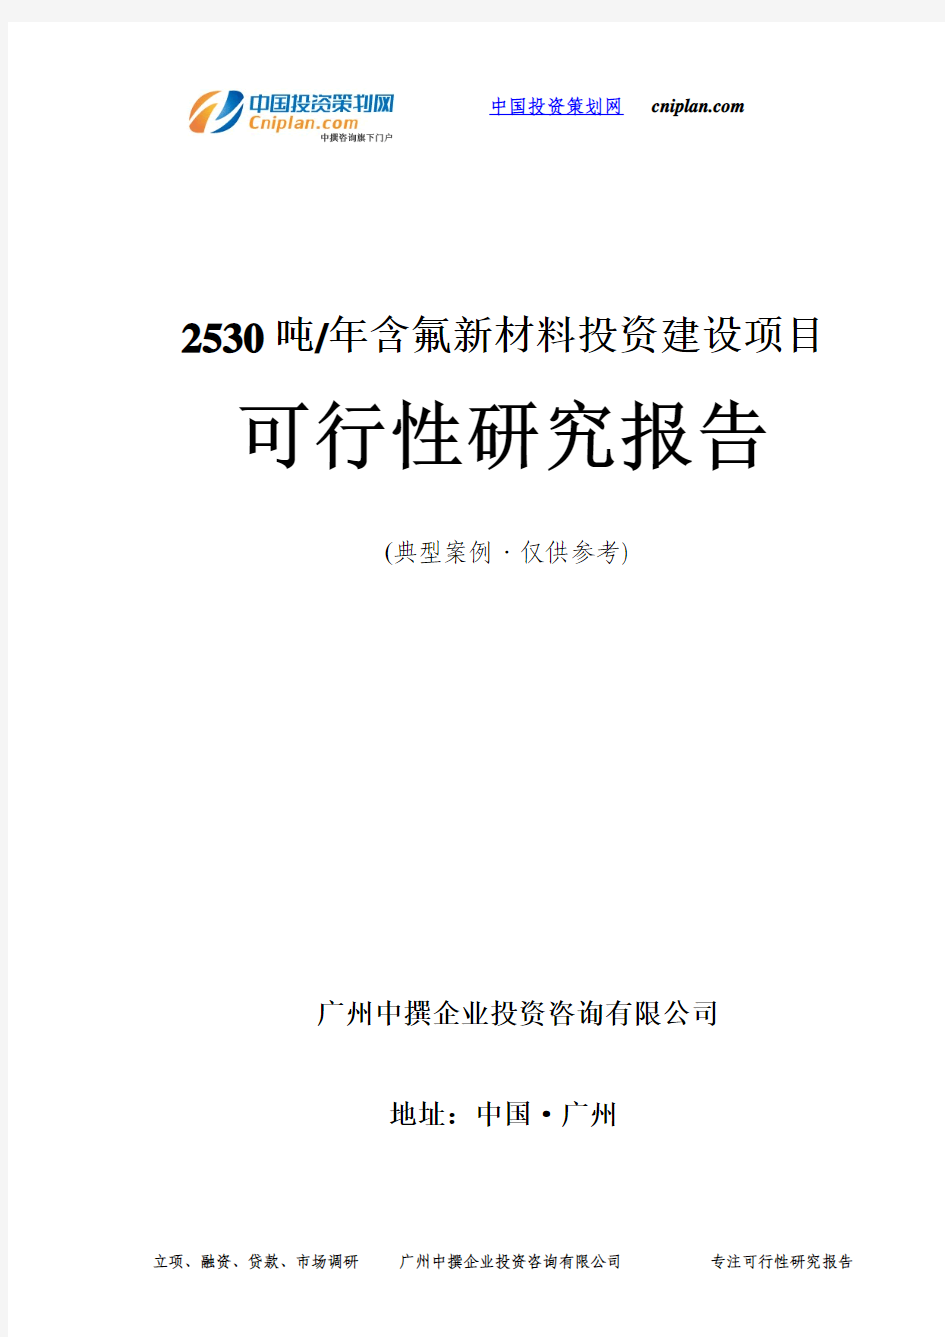 2530吨 年含氟新材料投资建设项目可行性研究报告-广州中撰咨询